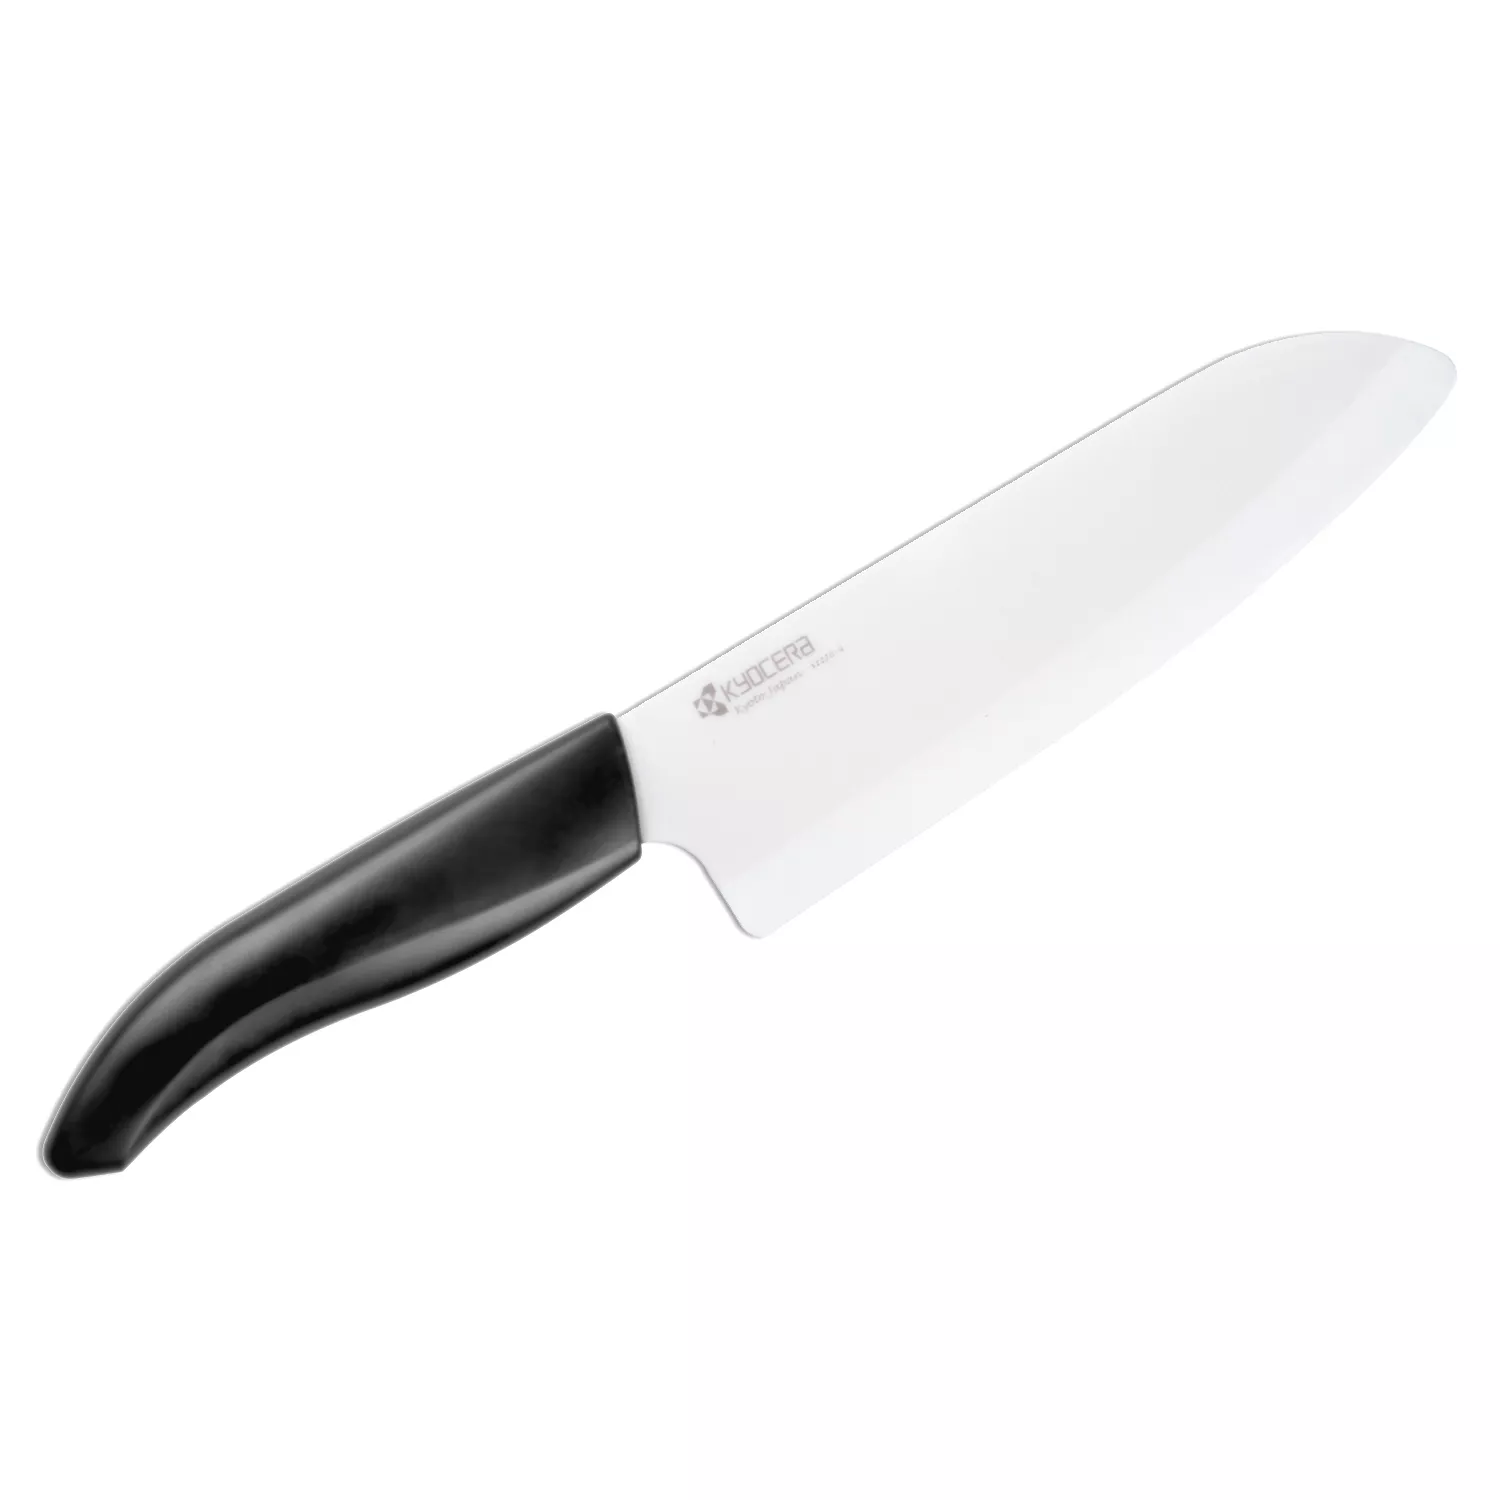 Kyocera Knife Chef S Santoku 6 Inch Blade